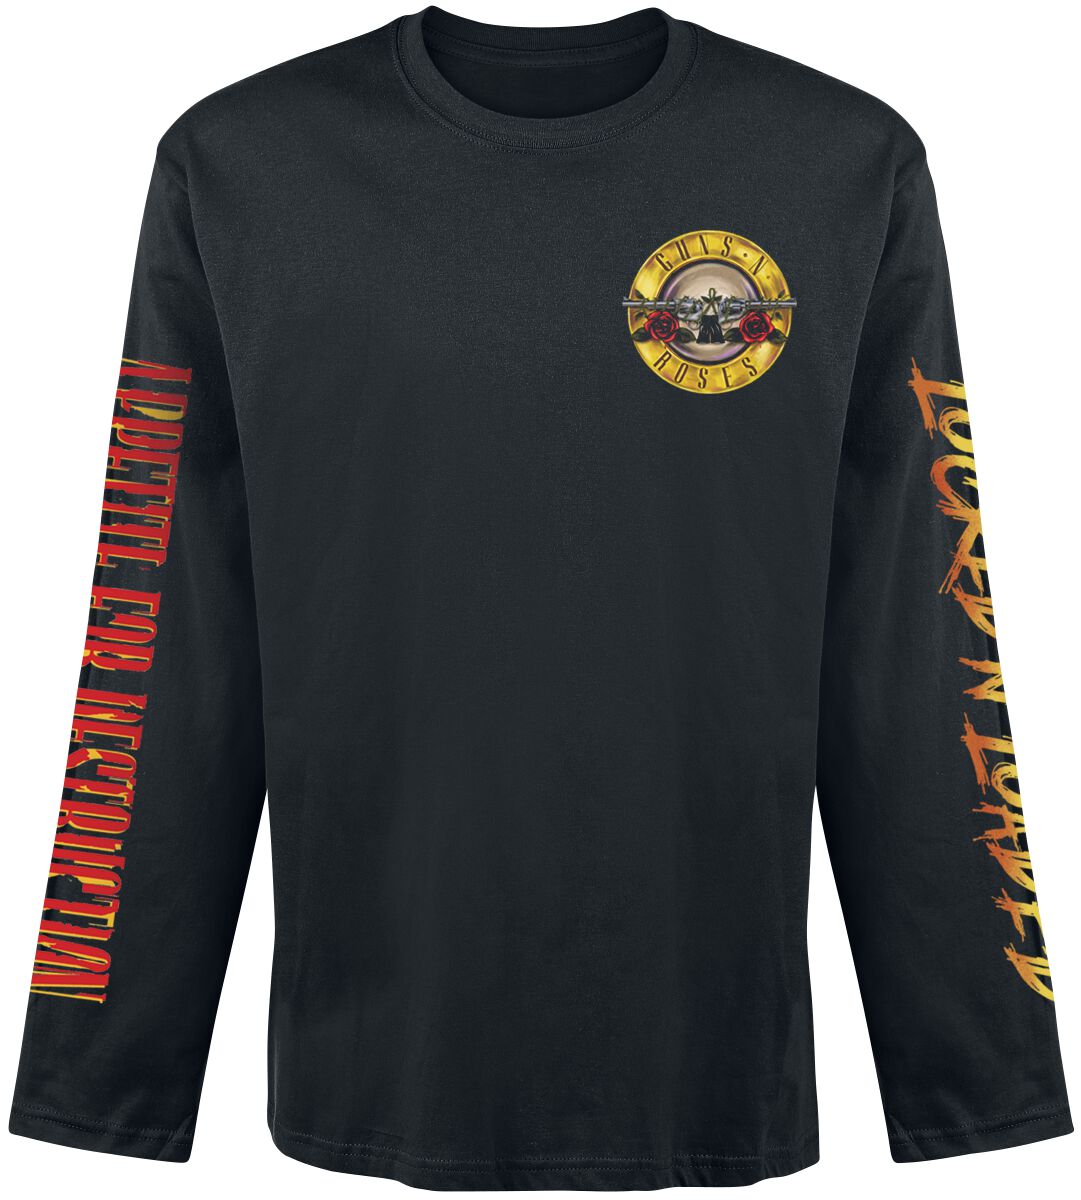 Guns N` Roses Langarmshirt - Locked N` Loaded - S bis XXL - für Männer - Größe L - schwarz  - Lizenziertes Merchandise!